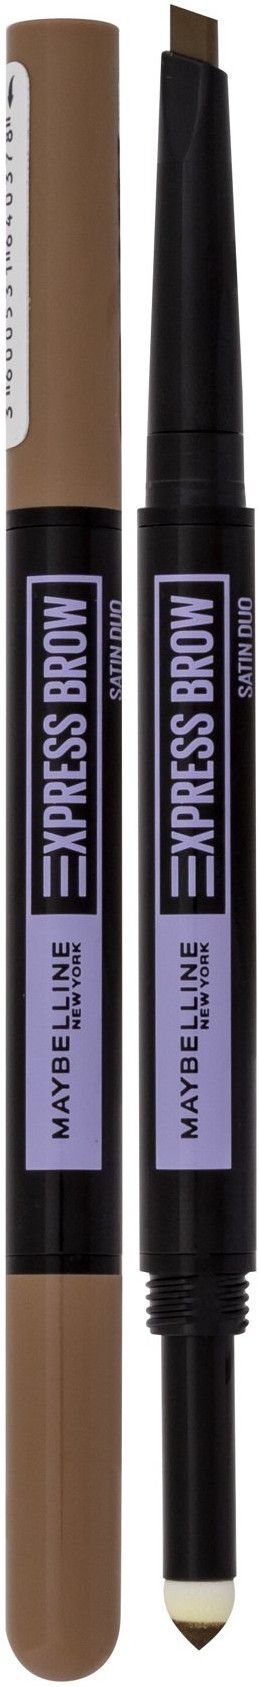 Maybelline Express Brow Satin Duo 01 Dark Blonde | Augenbrauen-Make-Up